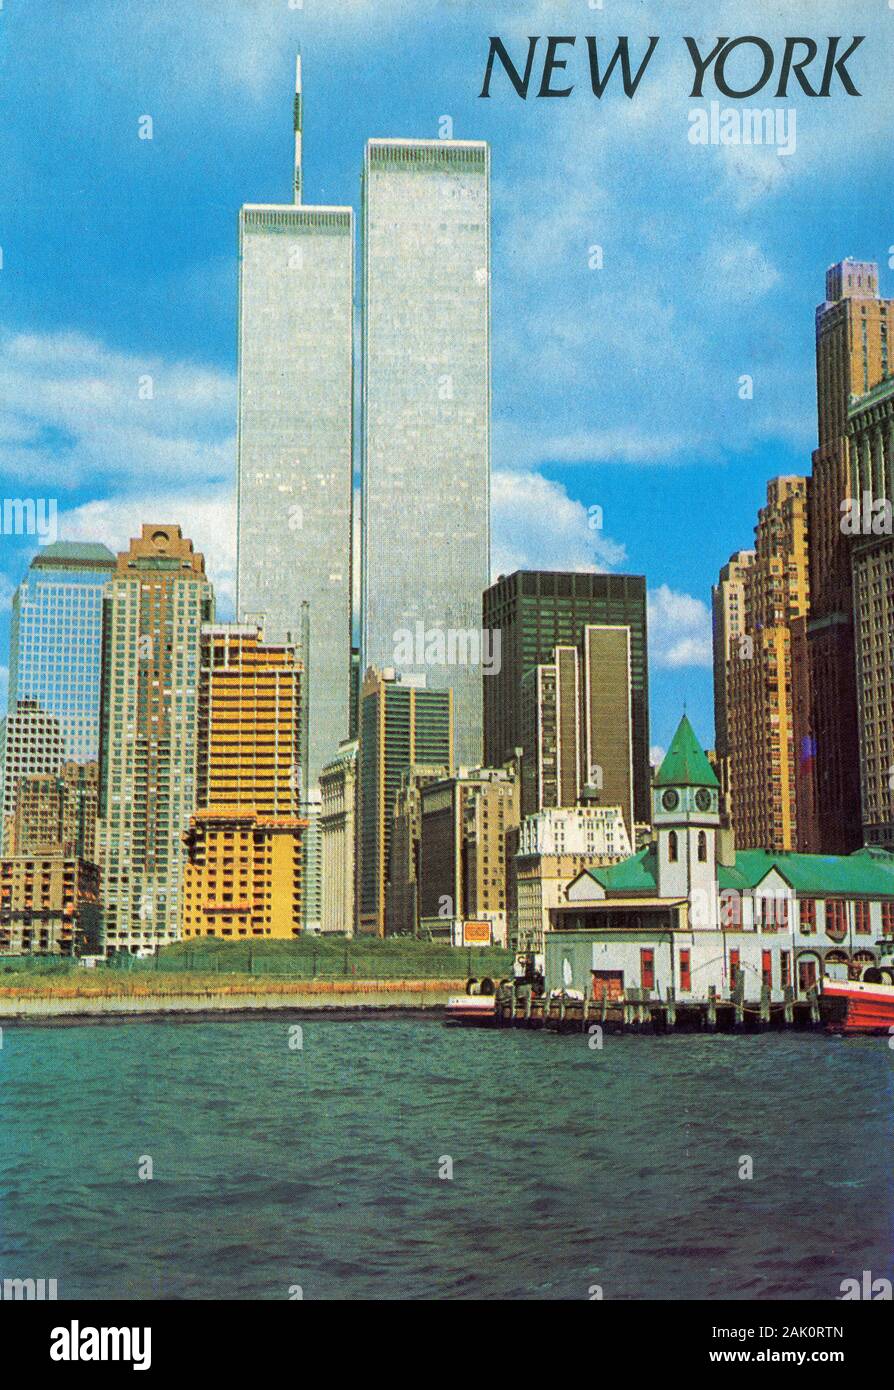 Un'immagine da cartolina storica del 1997 delle torri gemelle del World Trade Centre e del Battery Park a New York prima degli attacchi del 9/11 e del crollo di entrambe le torri Foto Stock